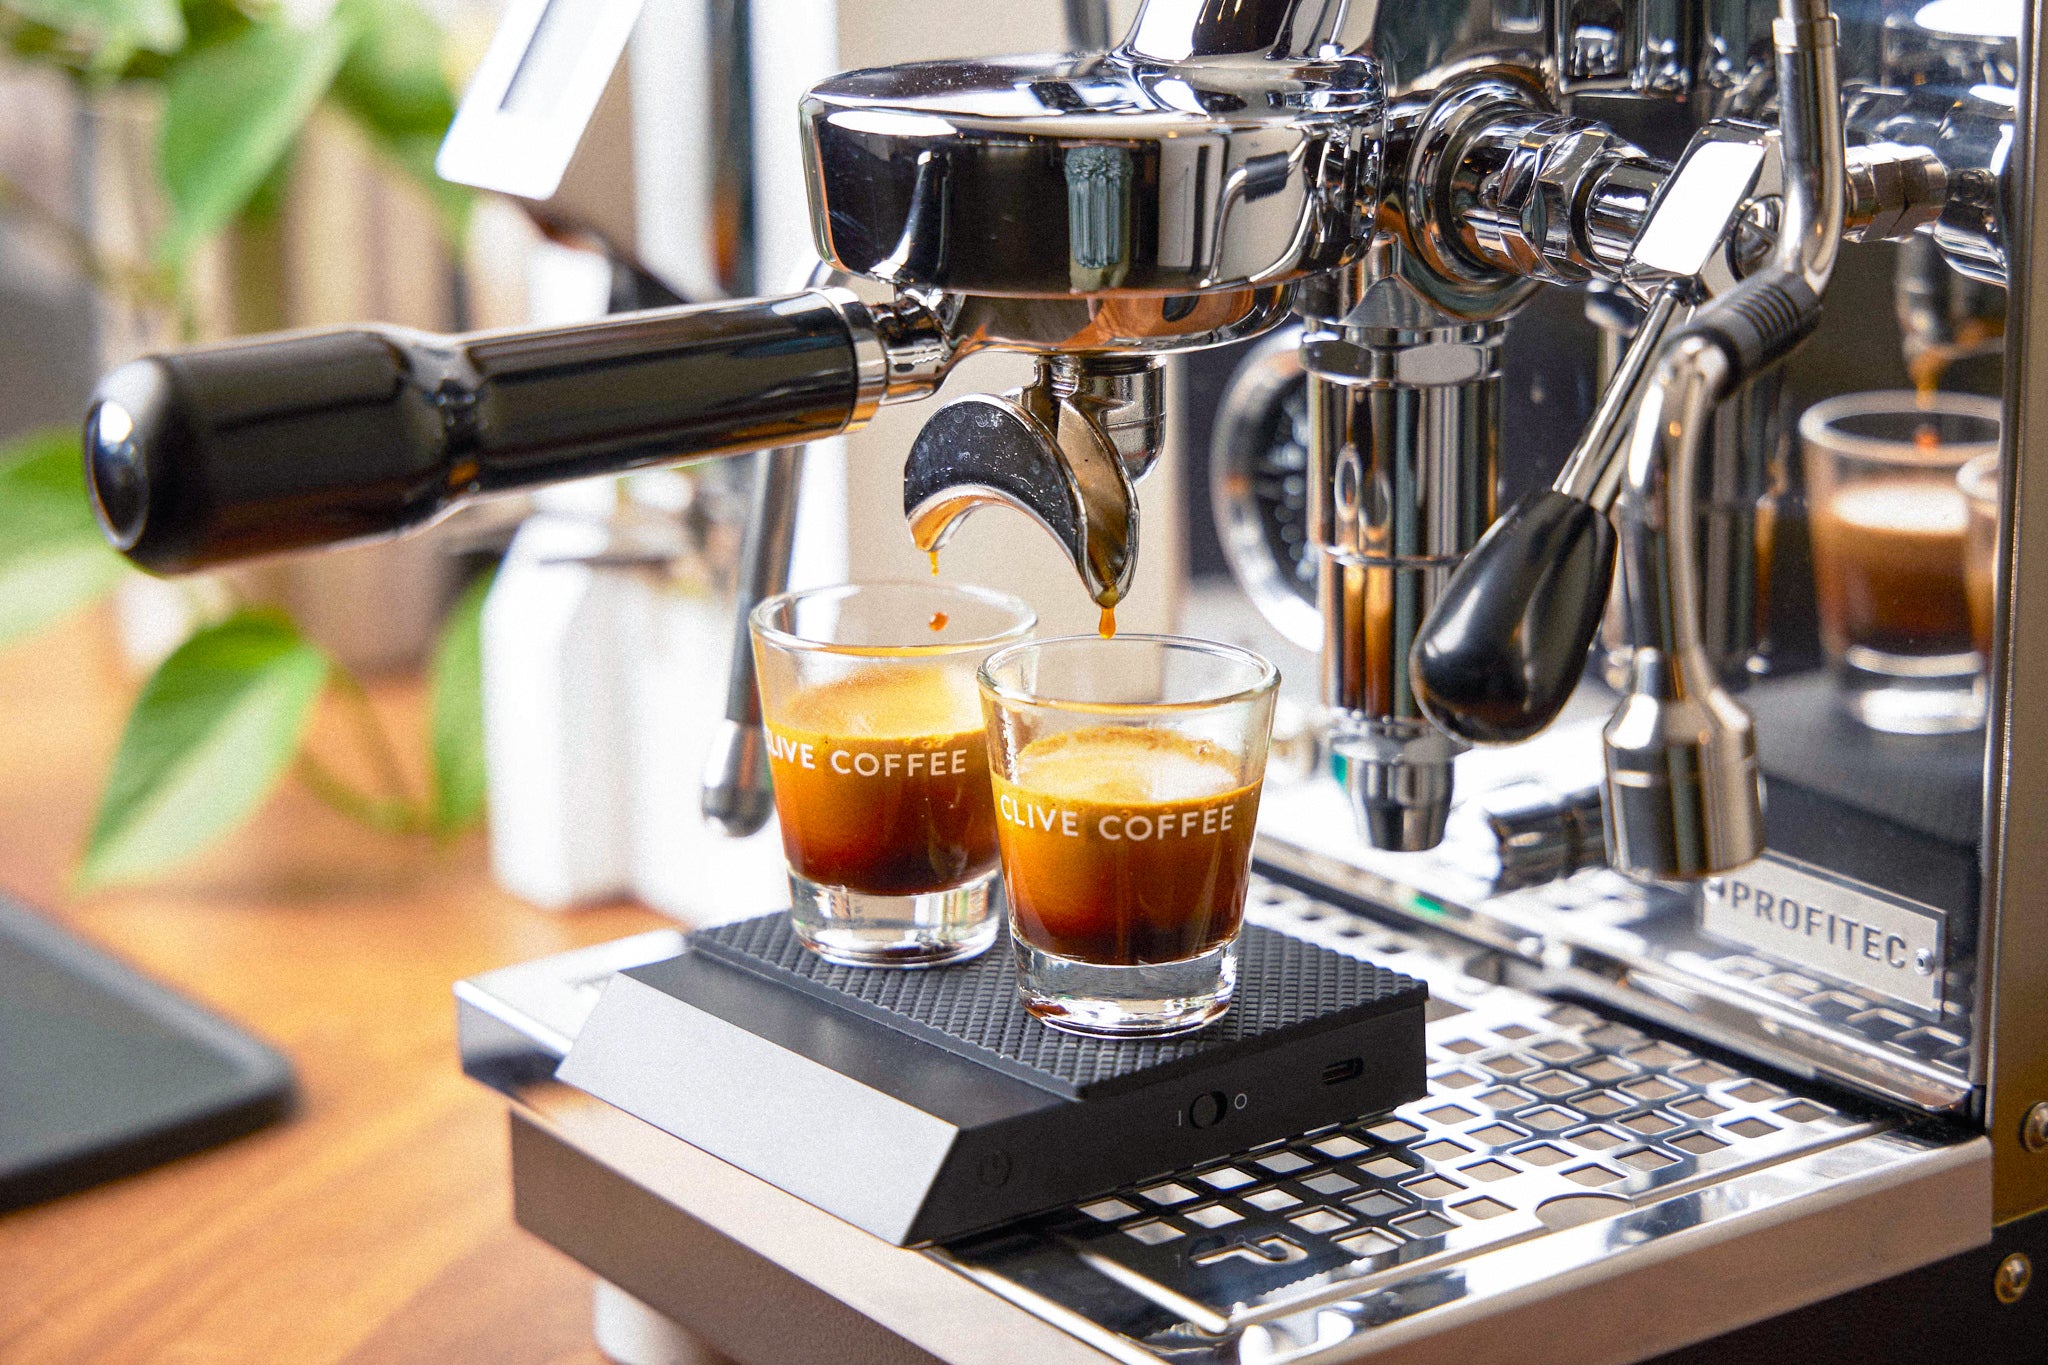 Espresso Accessories, Coffee Scale, Portafilter, Espresso Shots, from Clive Coffee, lifestyle